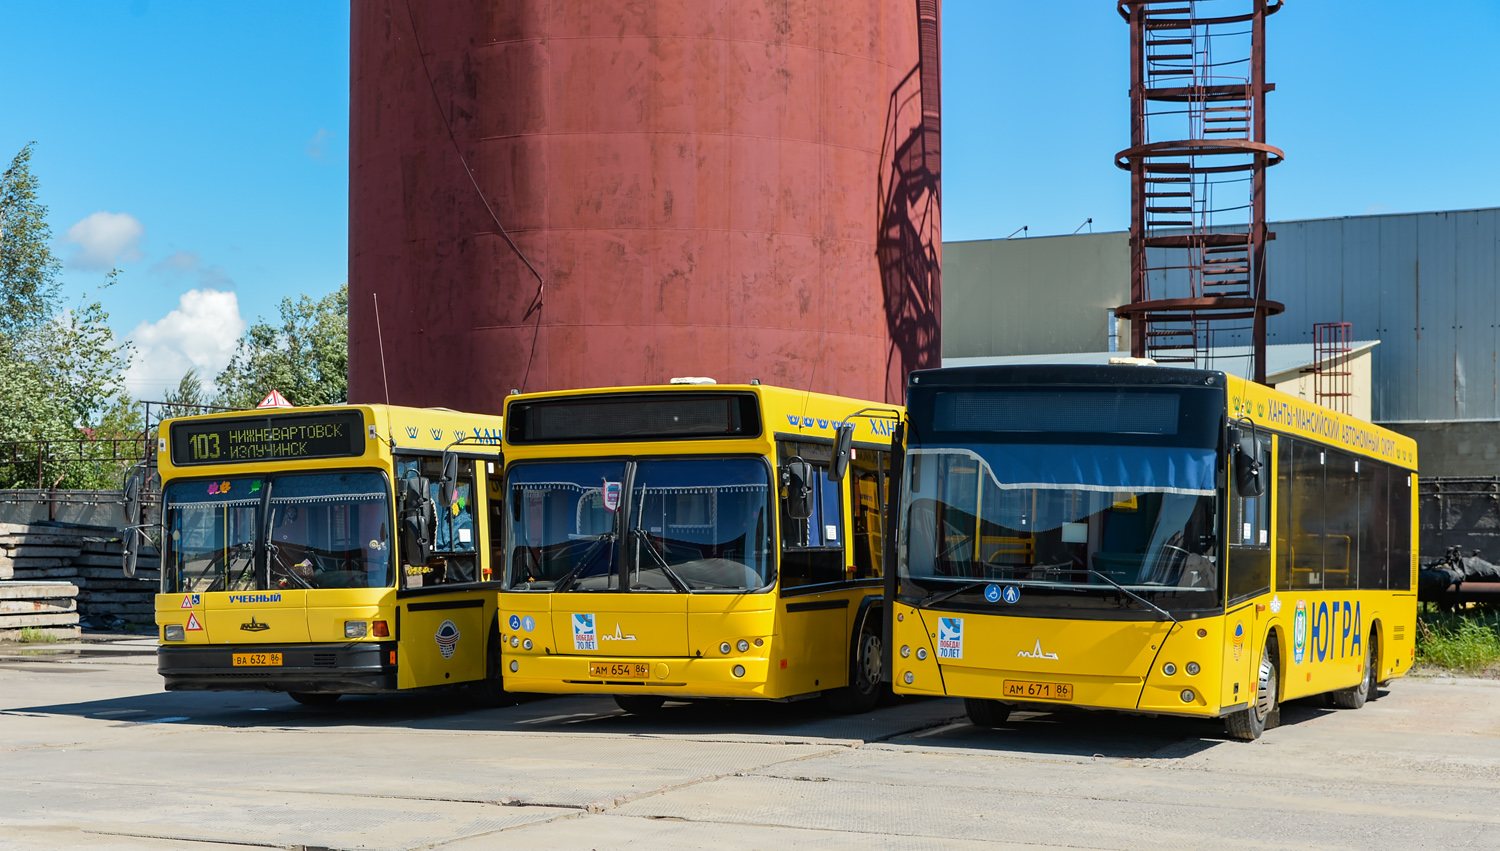 Chanty-Mansyjski Okręg Autonomiczny, MAZ-206.067 Nr АМ 671 86; Chanty-Mansyjski Okręg Autonomiczny — Bus fleets